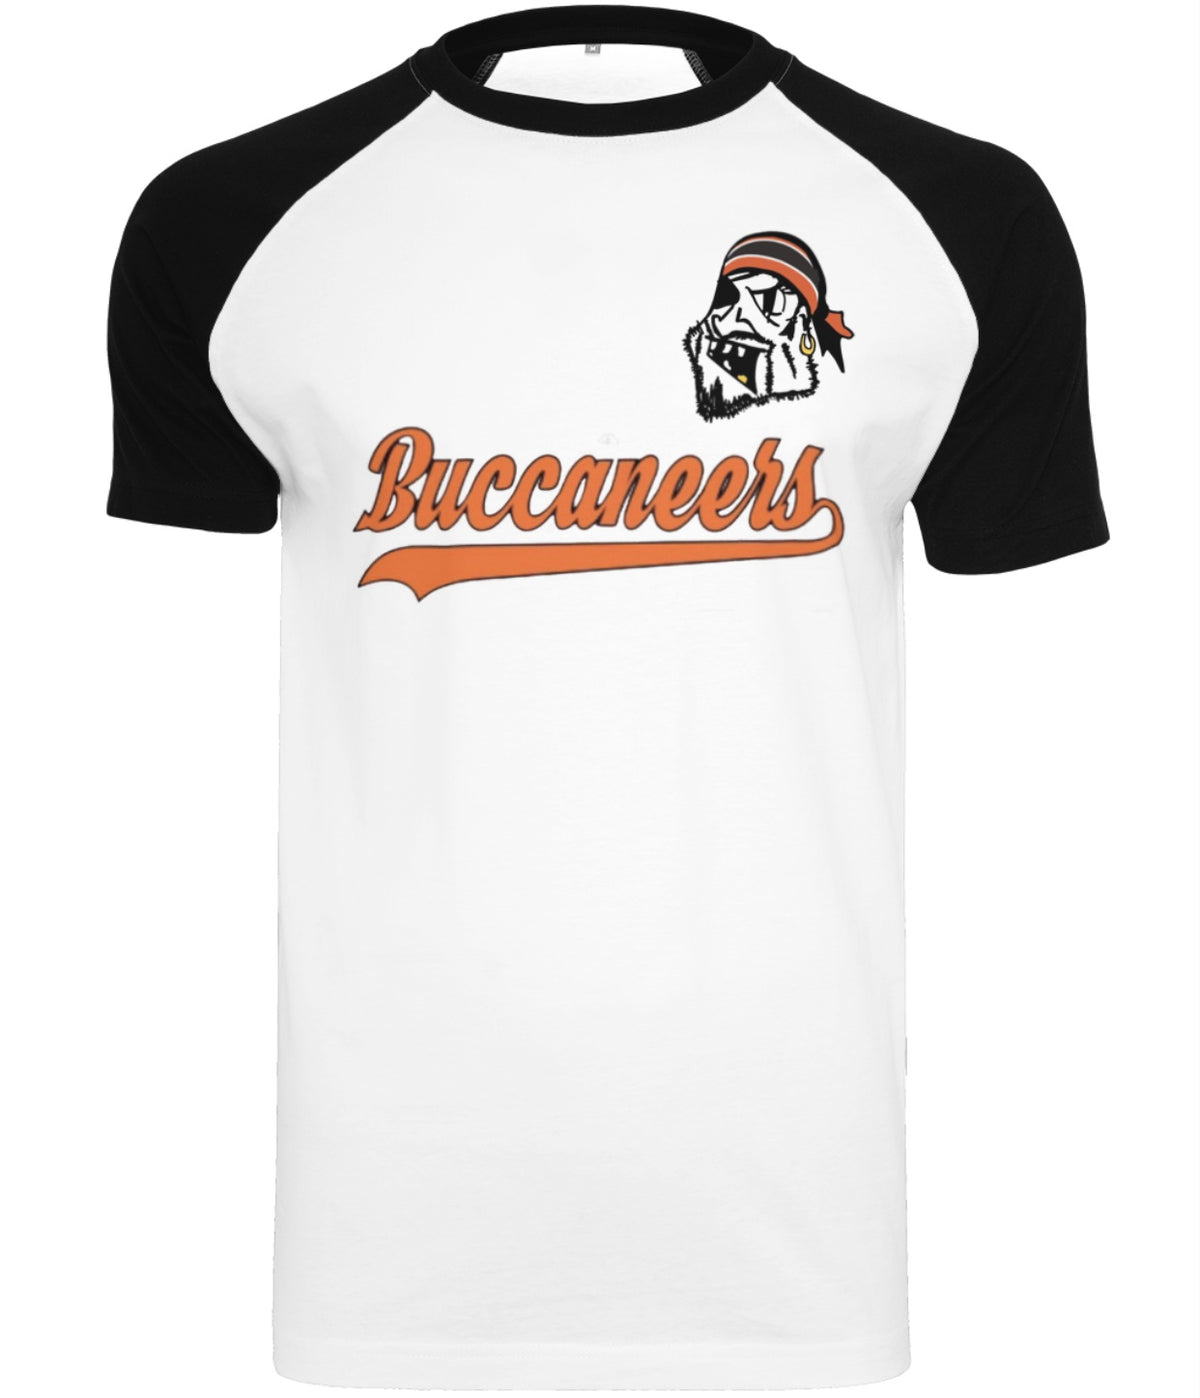 Buccaneers T-shirt